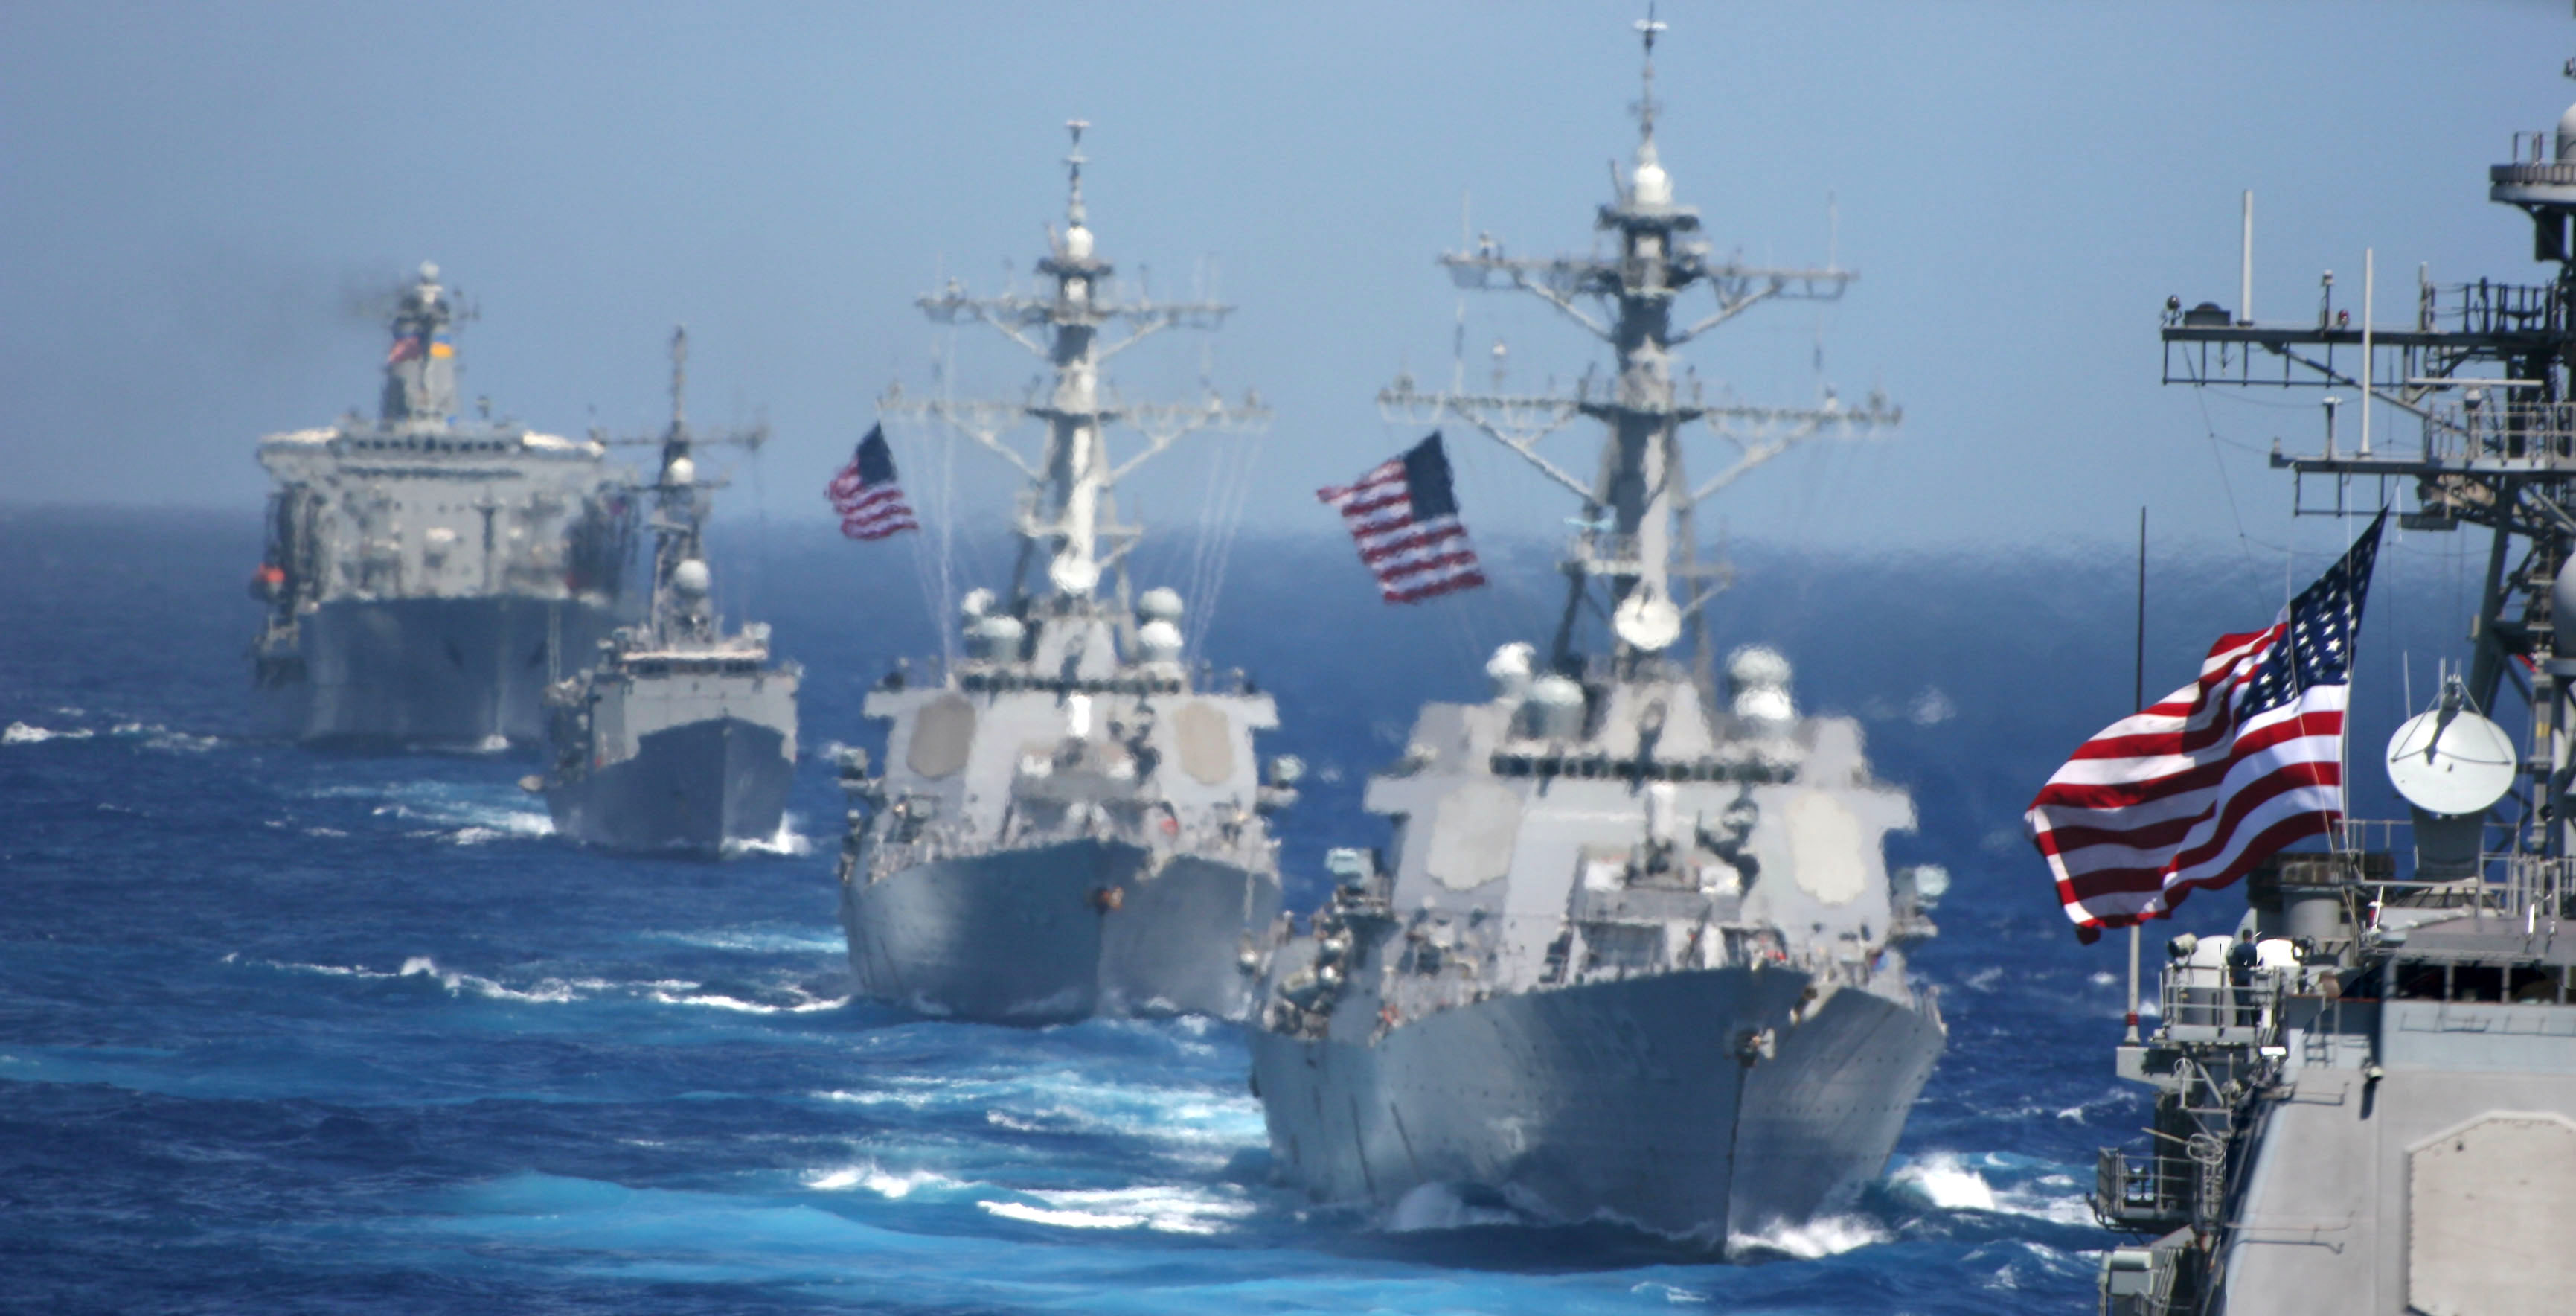 “The Fundamentals of Surface Warfare: Sailors and Ships”